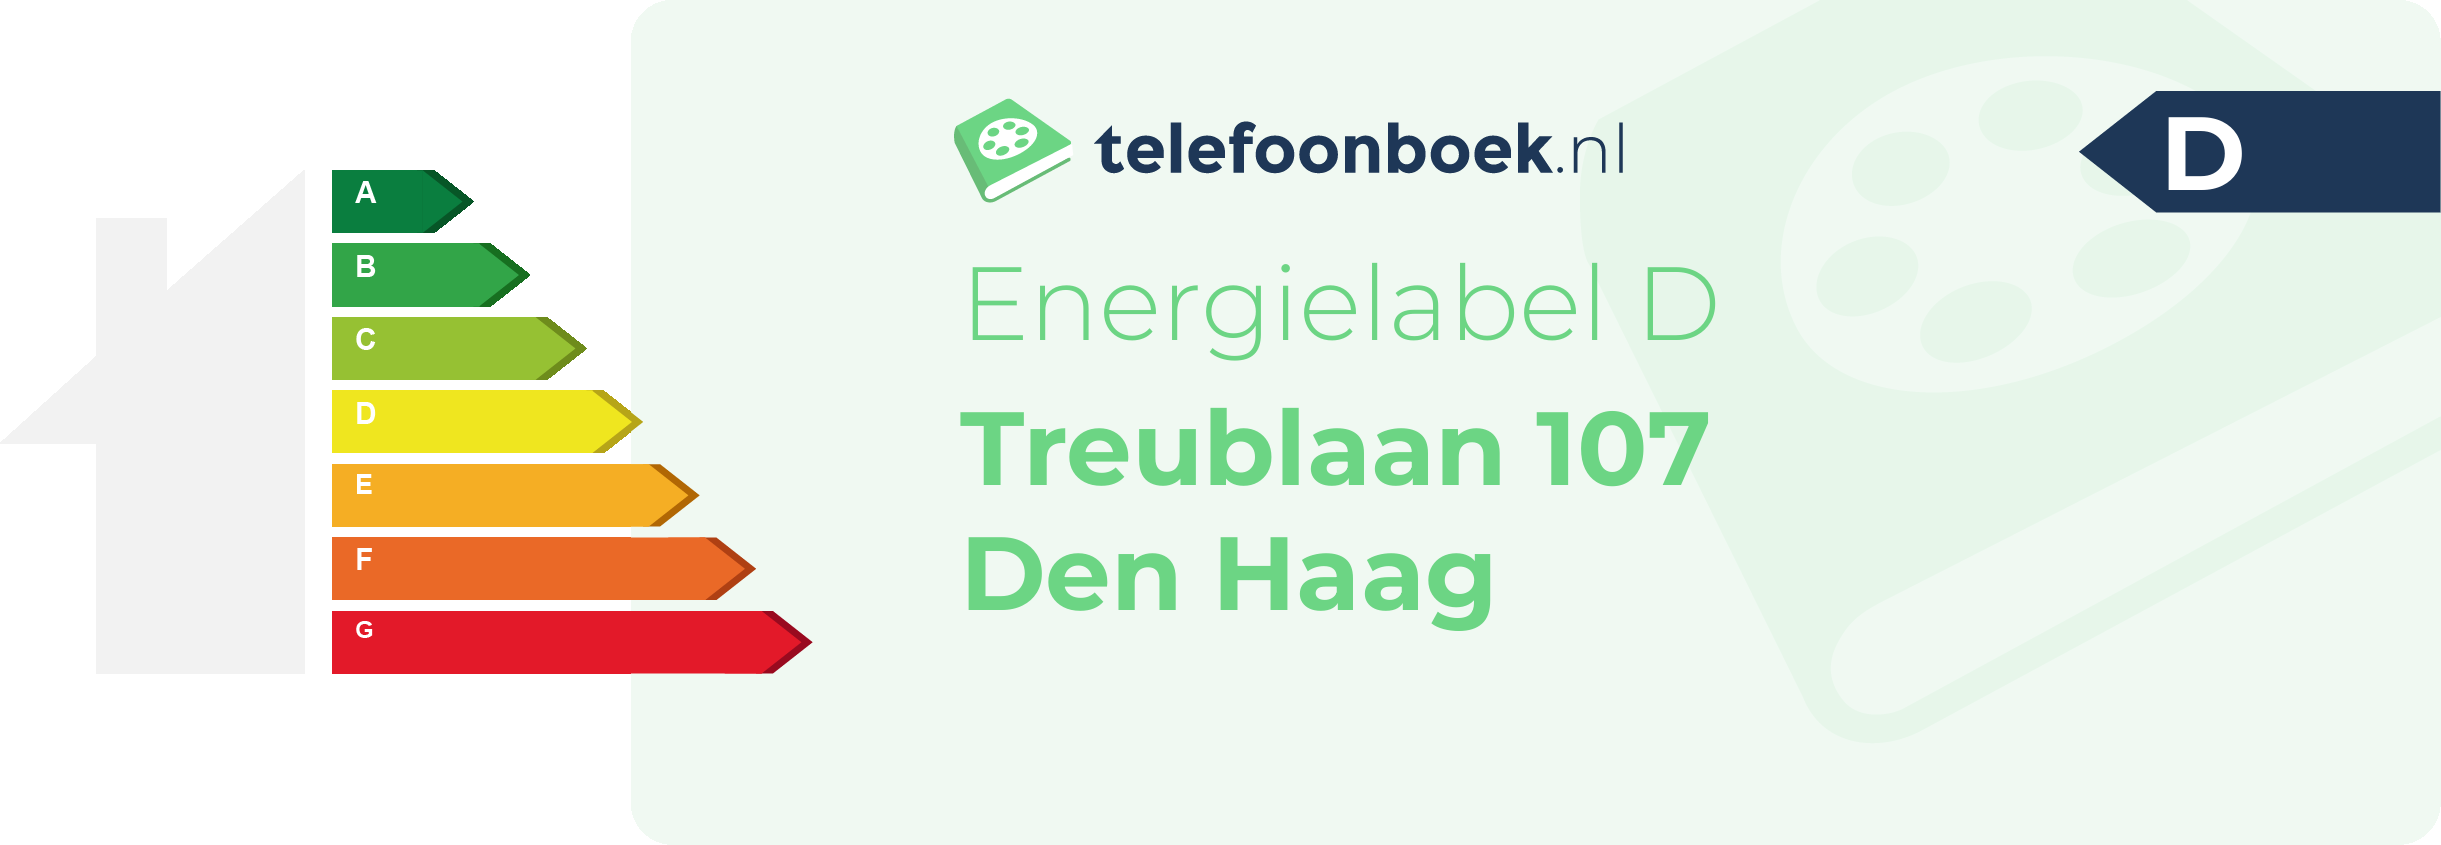 Energielabel Treublaan 107 Den Haag